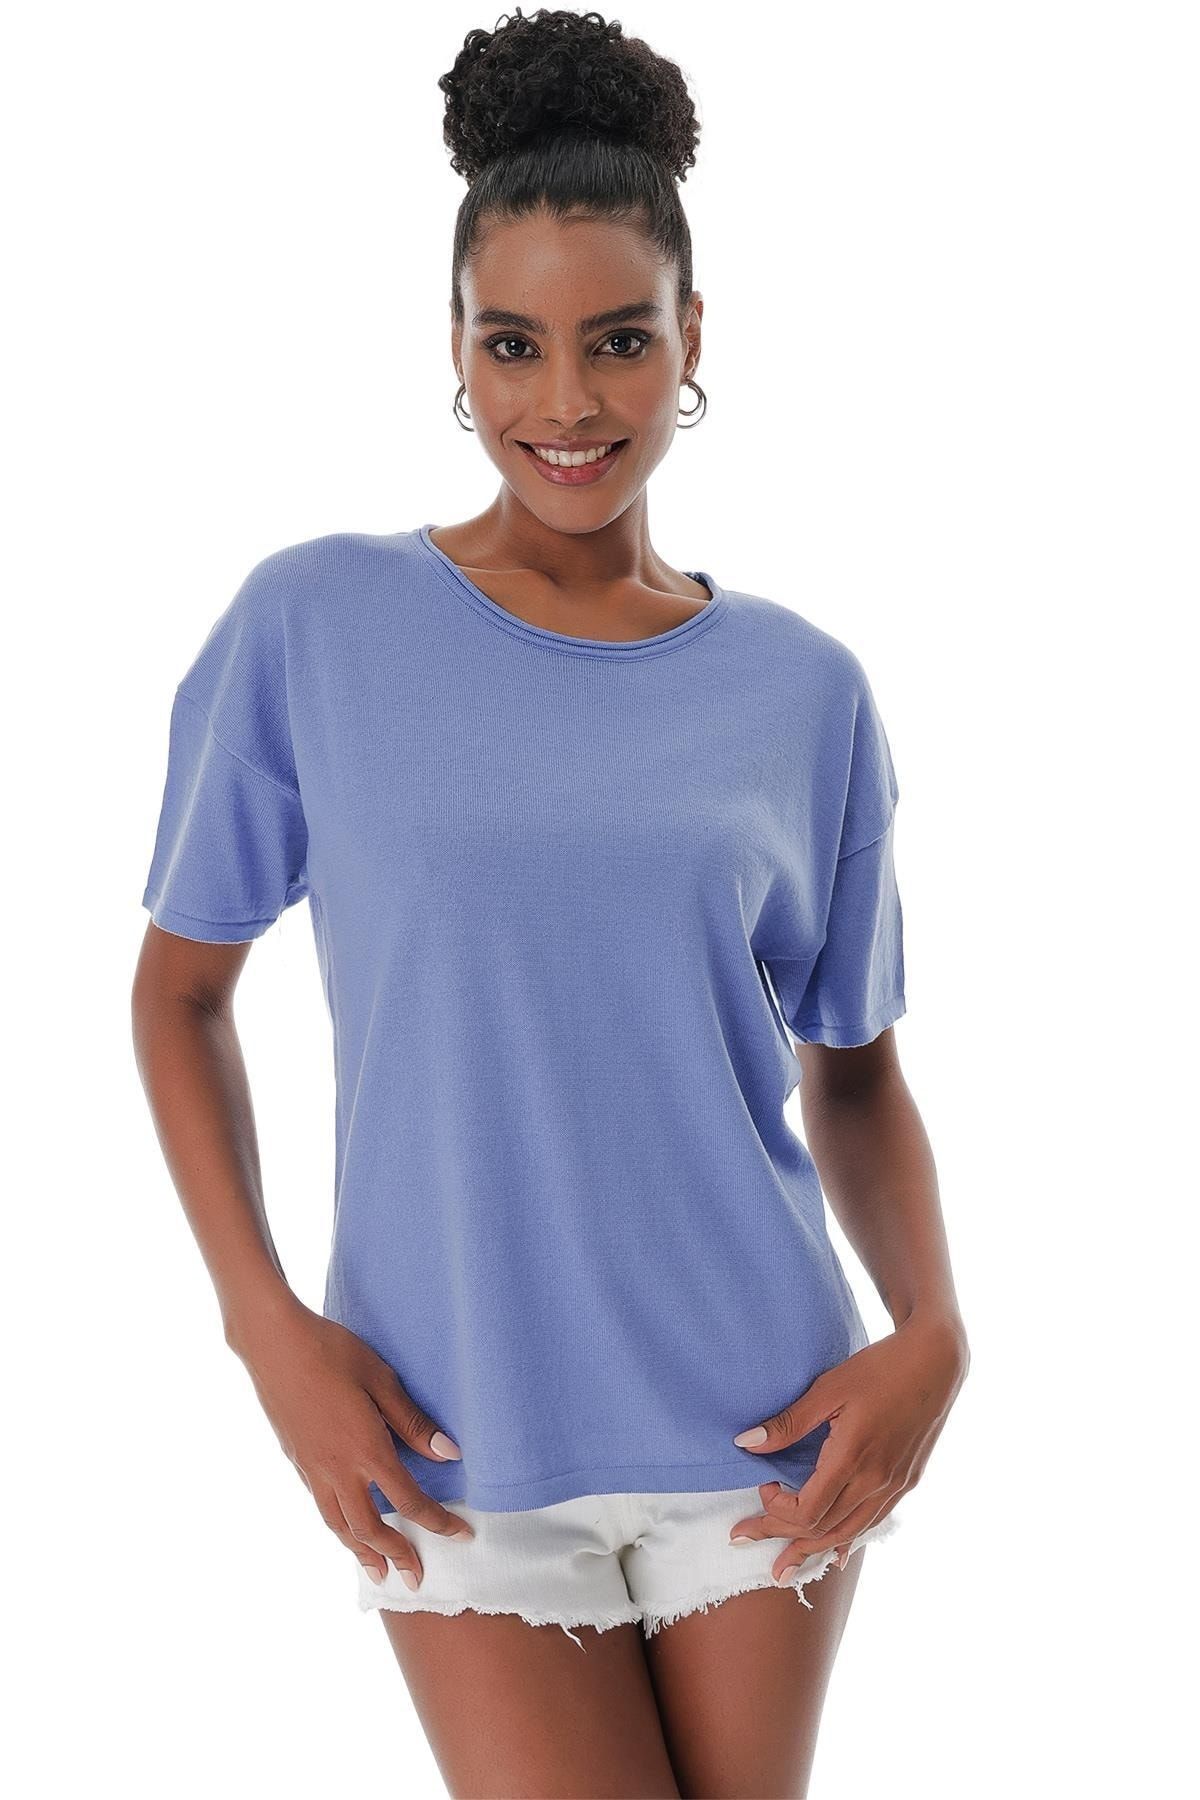 CHUBA Kadın Bisiklet Yaka Düşük Kollu Yırtmaçlı Loose Fit Rahat Kalıp Triko T-shirt Mavi 23s1002